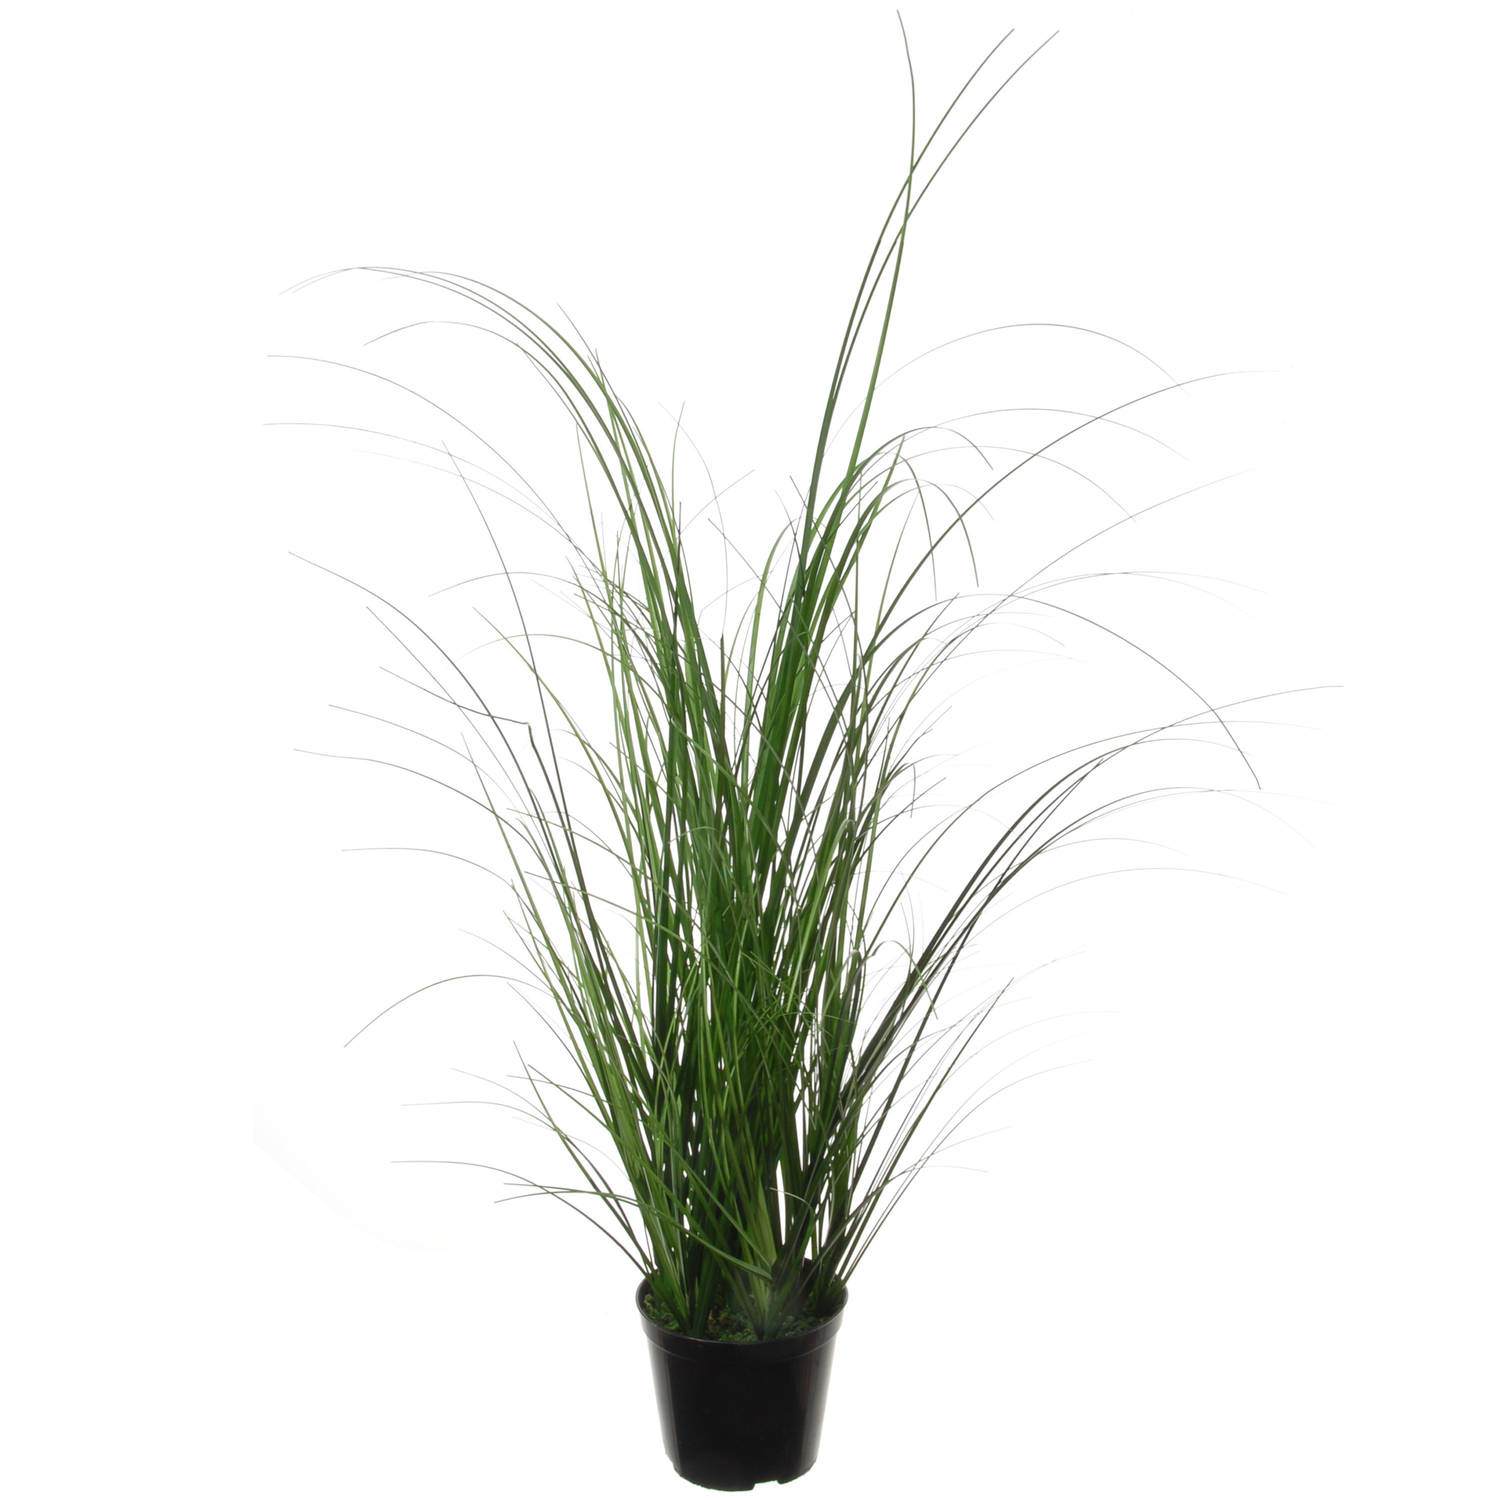 Louis Maes Quality kunstplant - Siergras bush sprieten - donkergroen - H65 cm - in pot